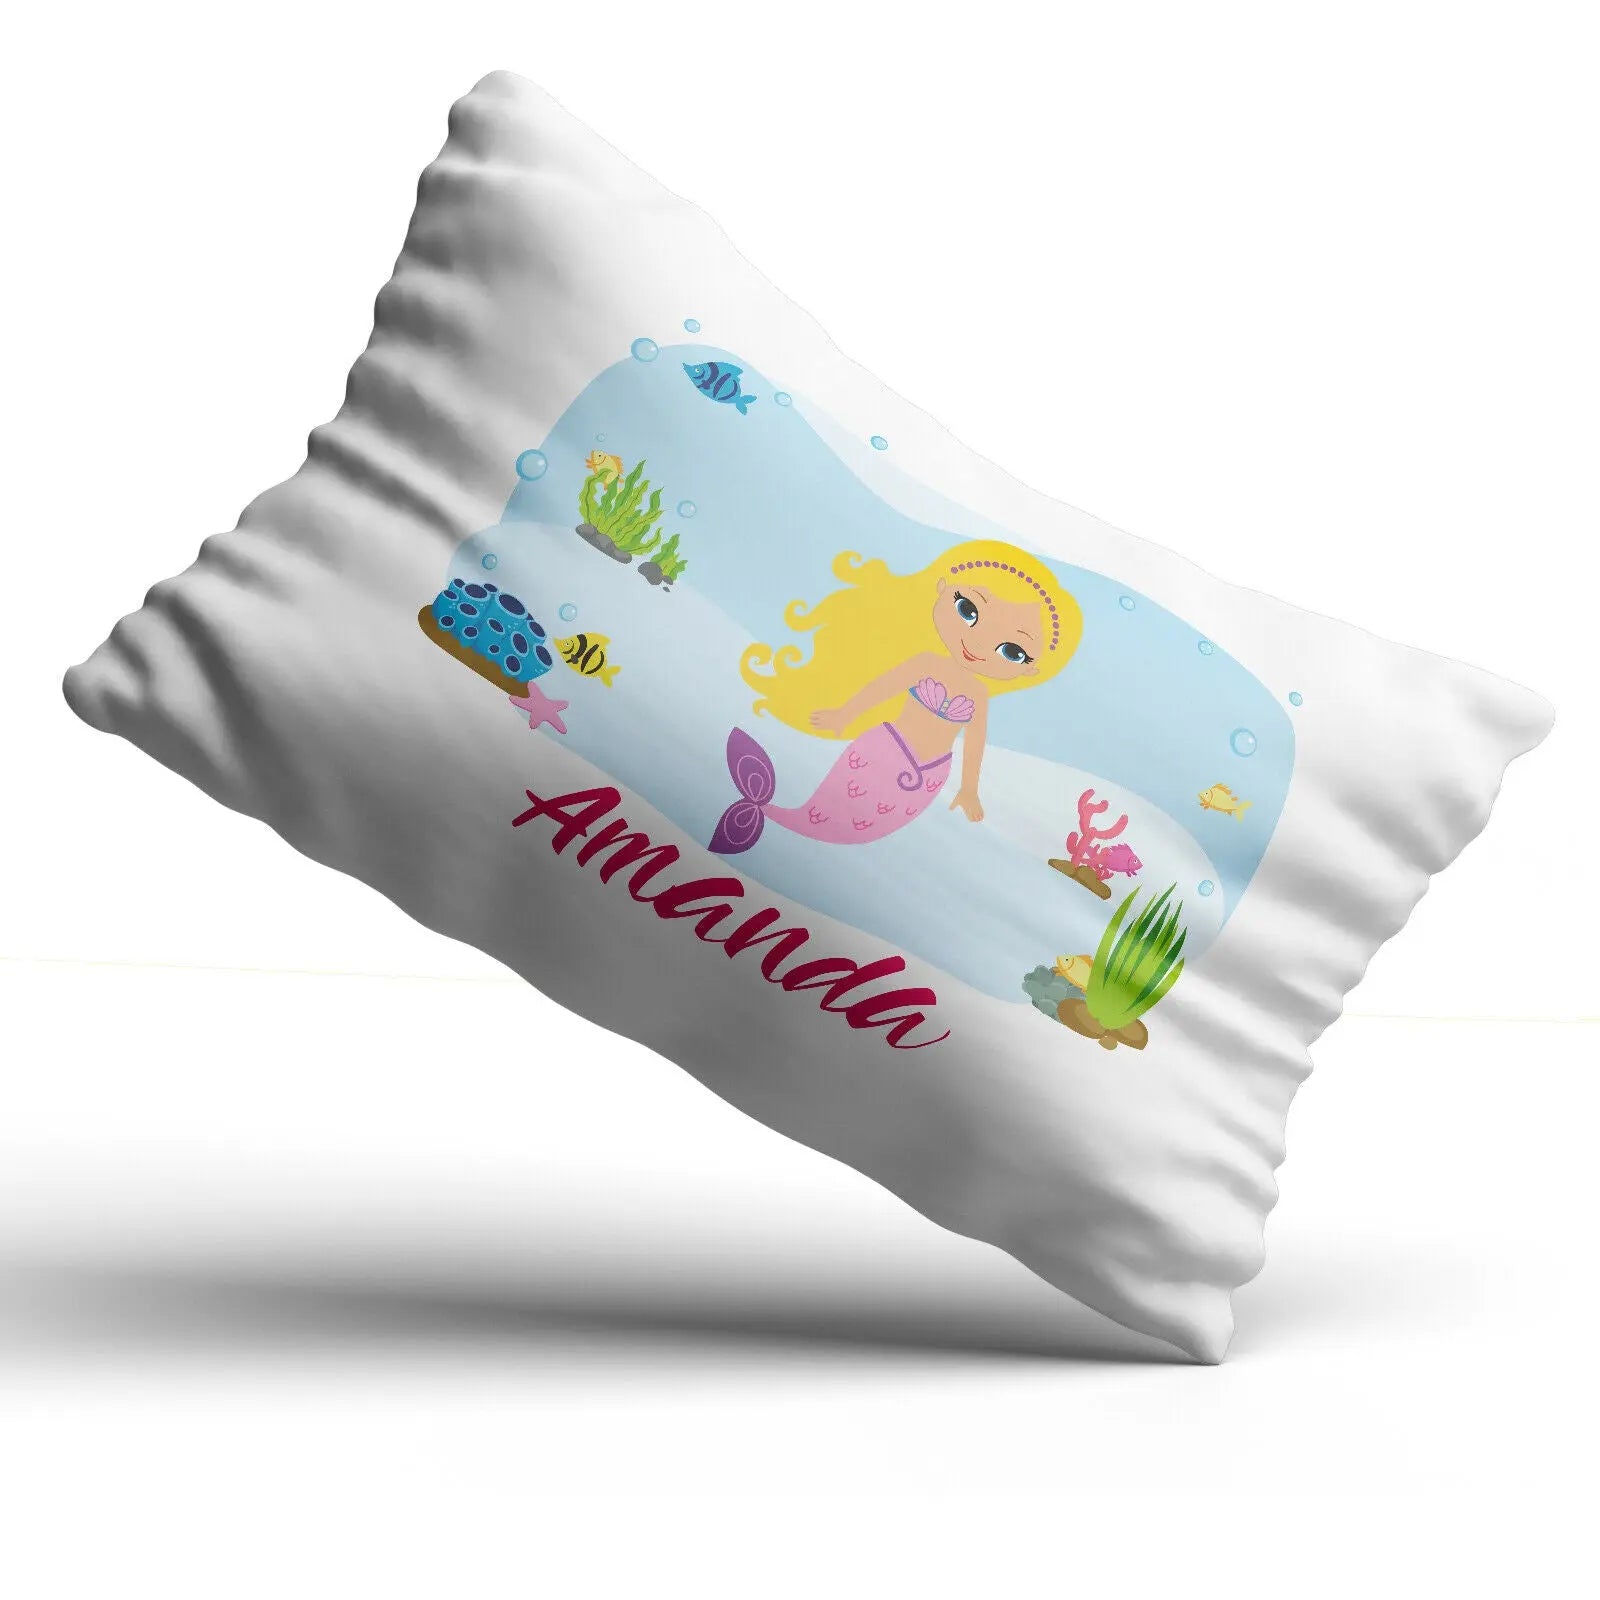 Personalisierter Meerjungfrau-Kissenbezug, bedrucktes Geschenk für Kinder, individueller Druck – Blond